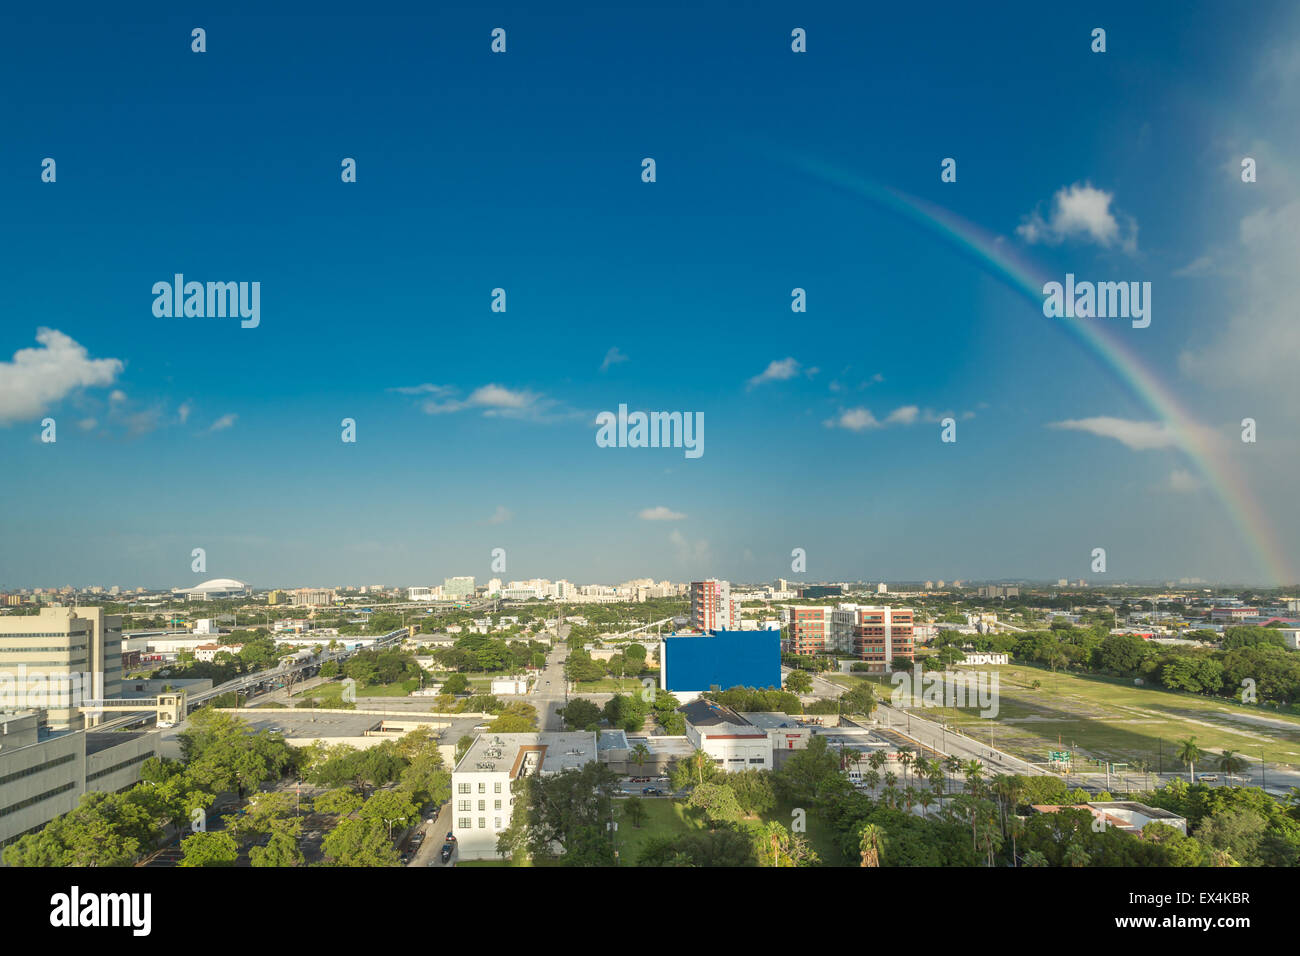 Vue aérienne de la zone du centre-ville de Miami, Floride, montrant le gratte-ciel coloré et d'une grande densité de bâtiments Banque D'Images